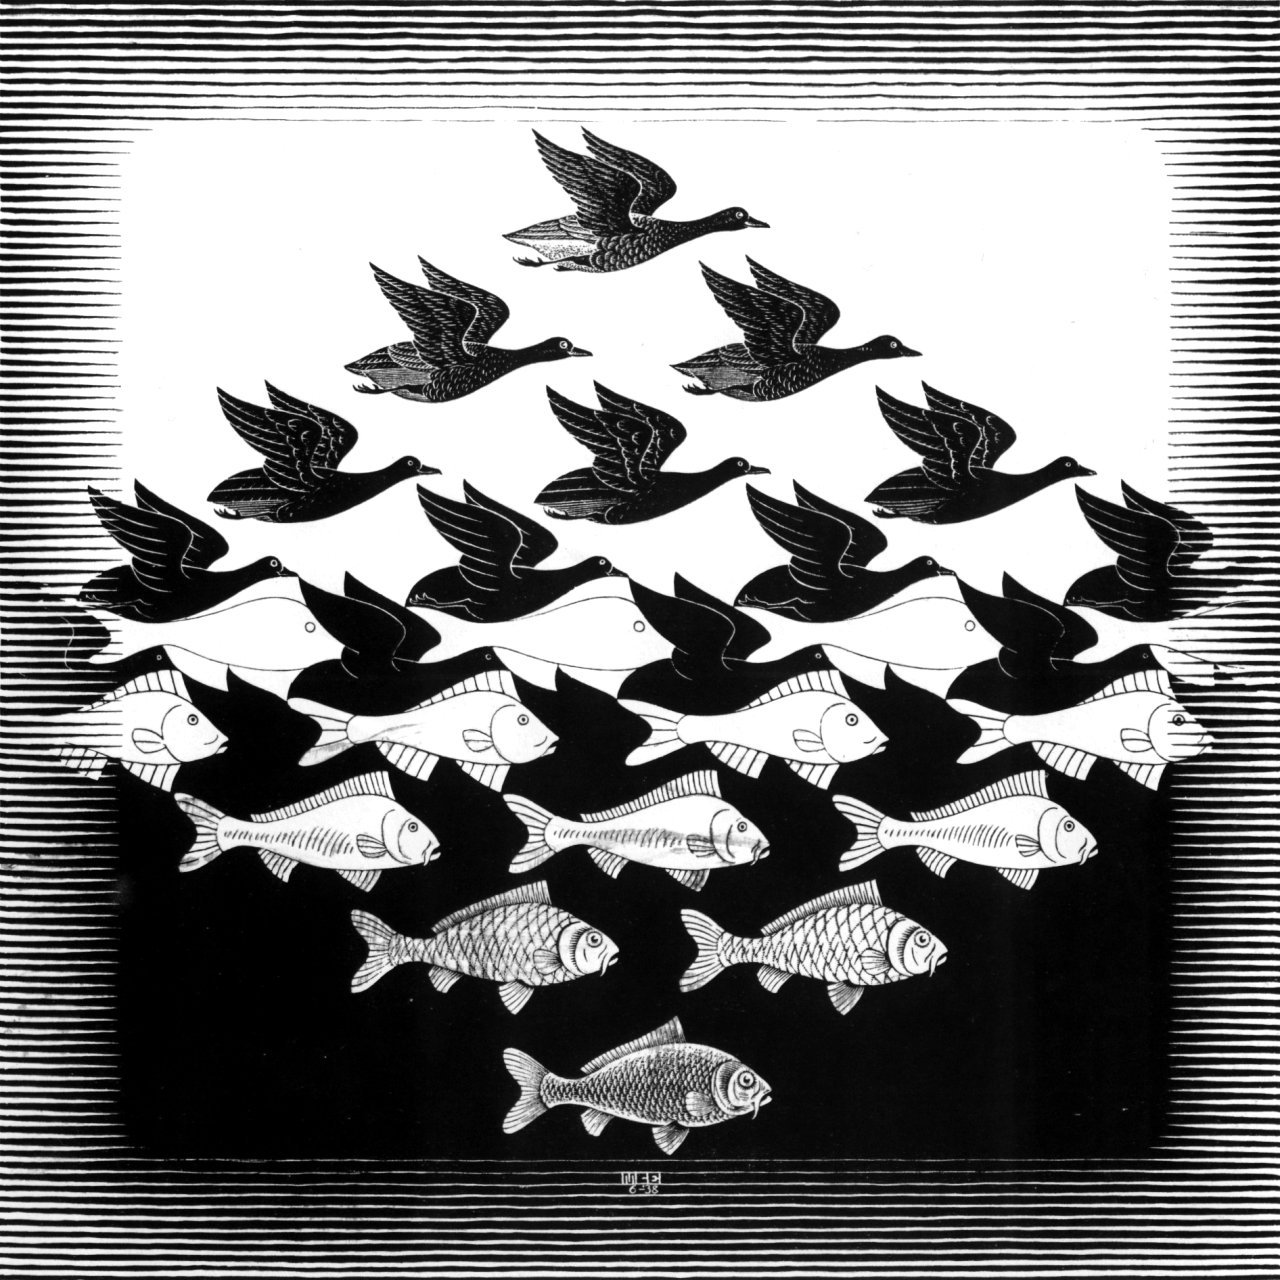 M.C. Escher, 1938 Optical Art